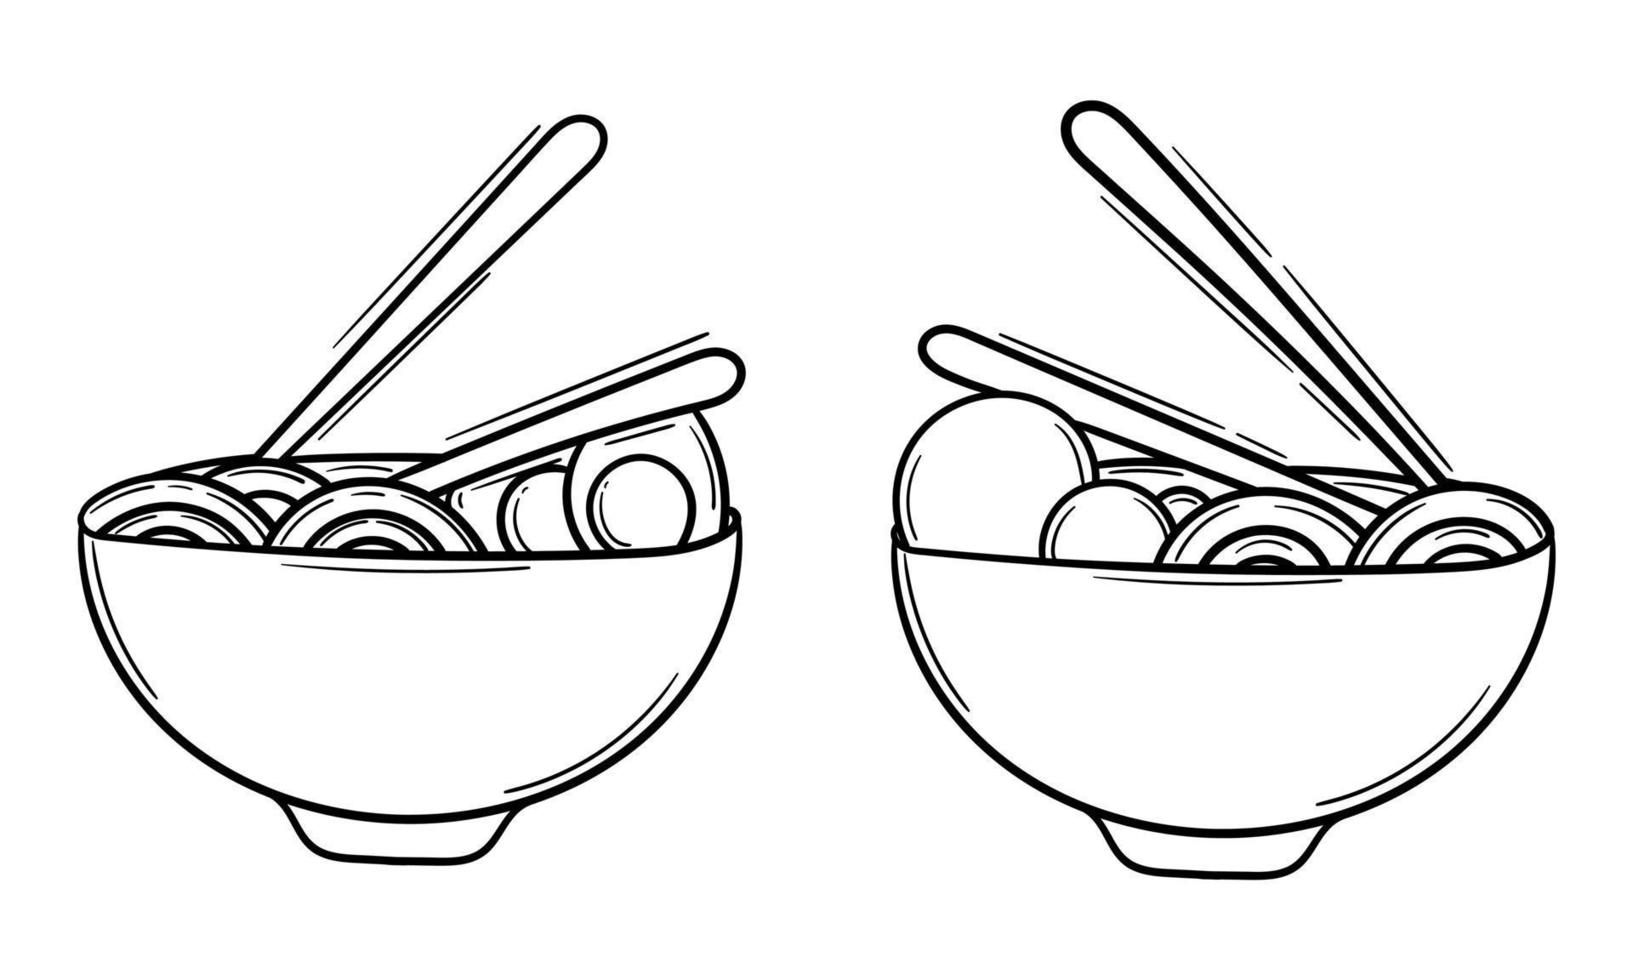 hand- getrokken illustratie van noedels en eieren, en noedels en gehaktballen vector